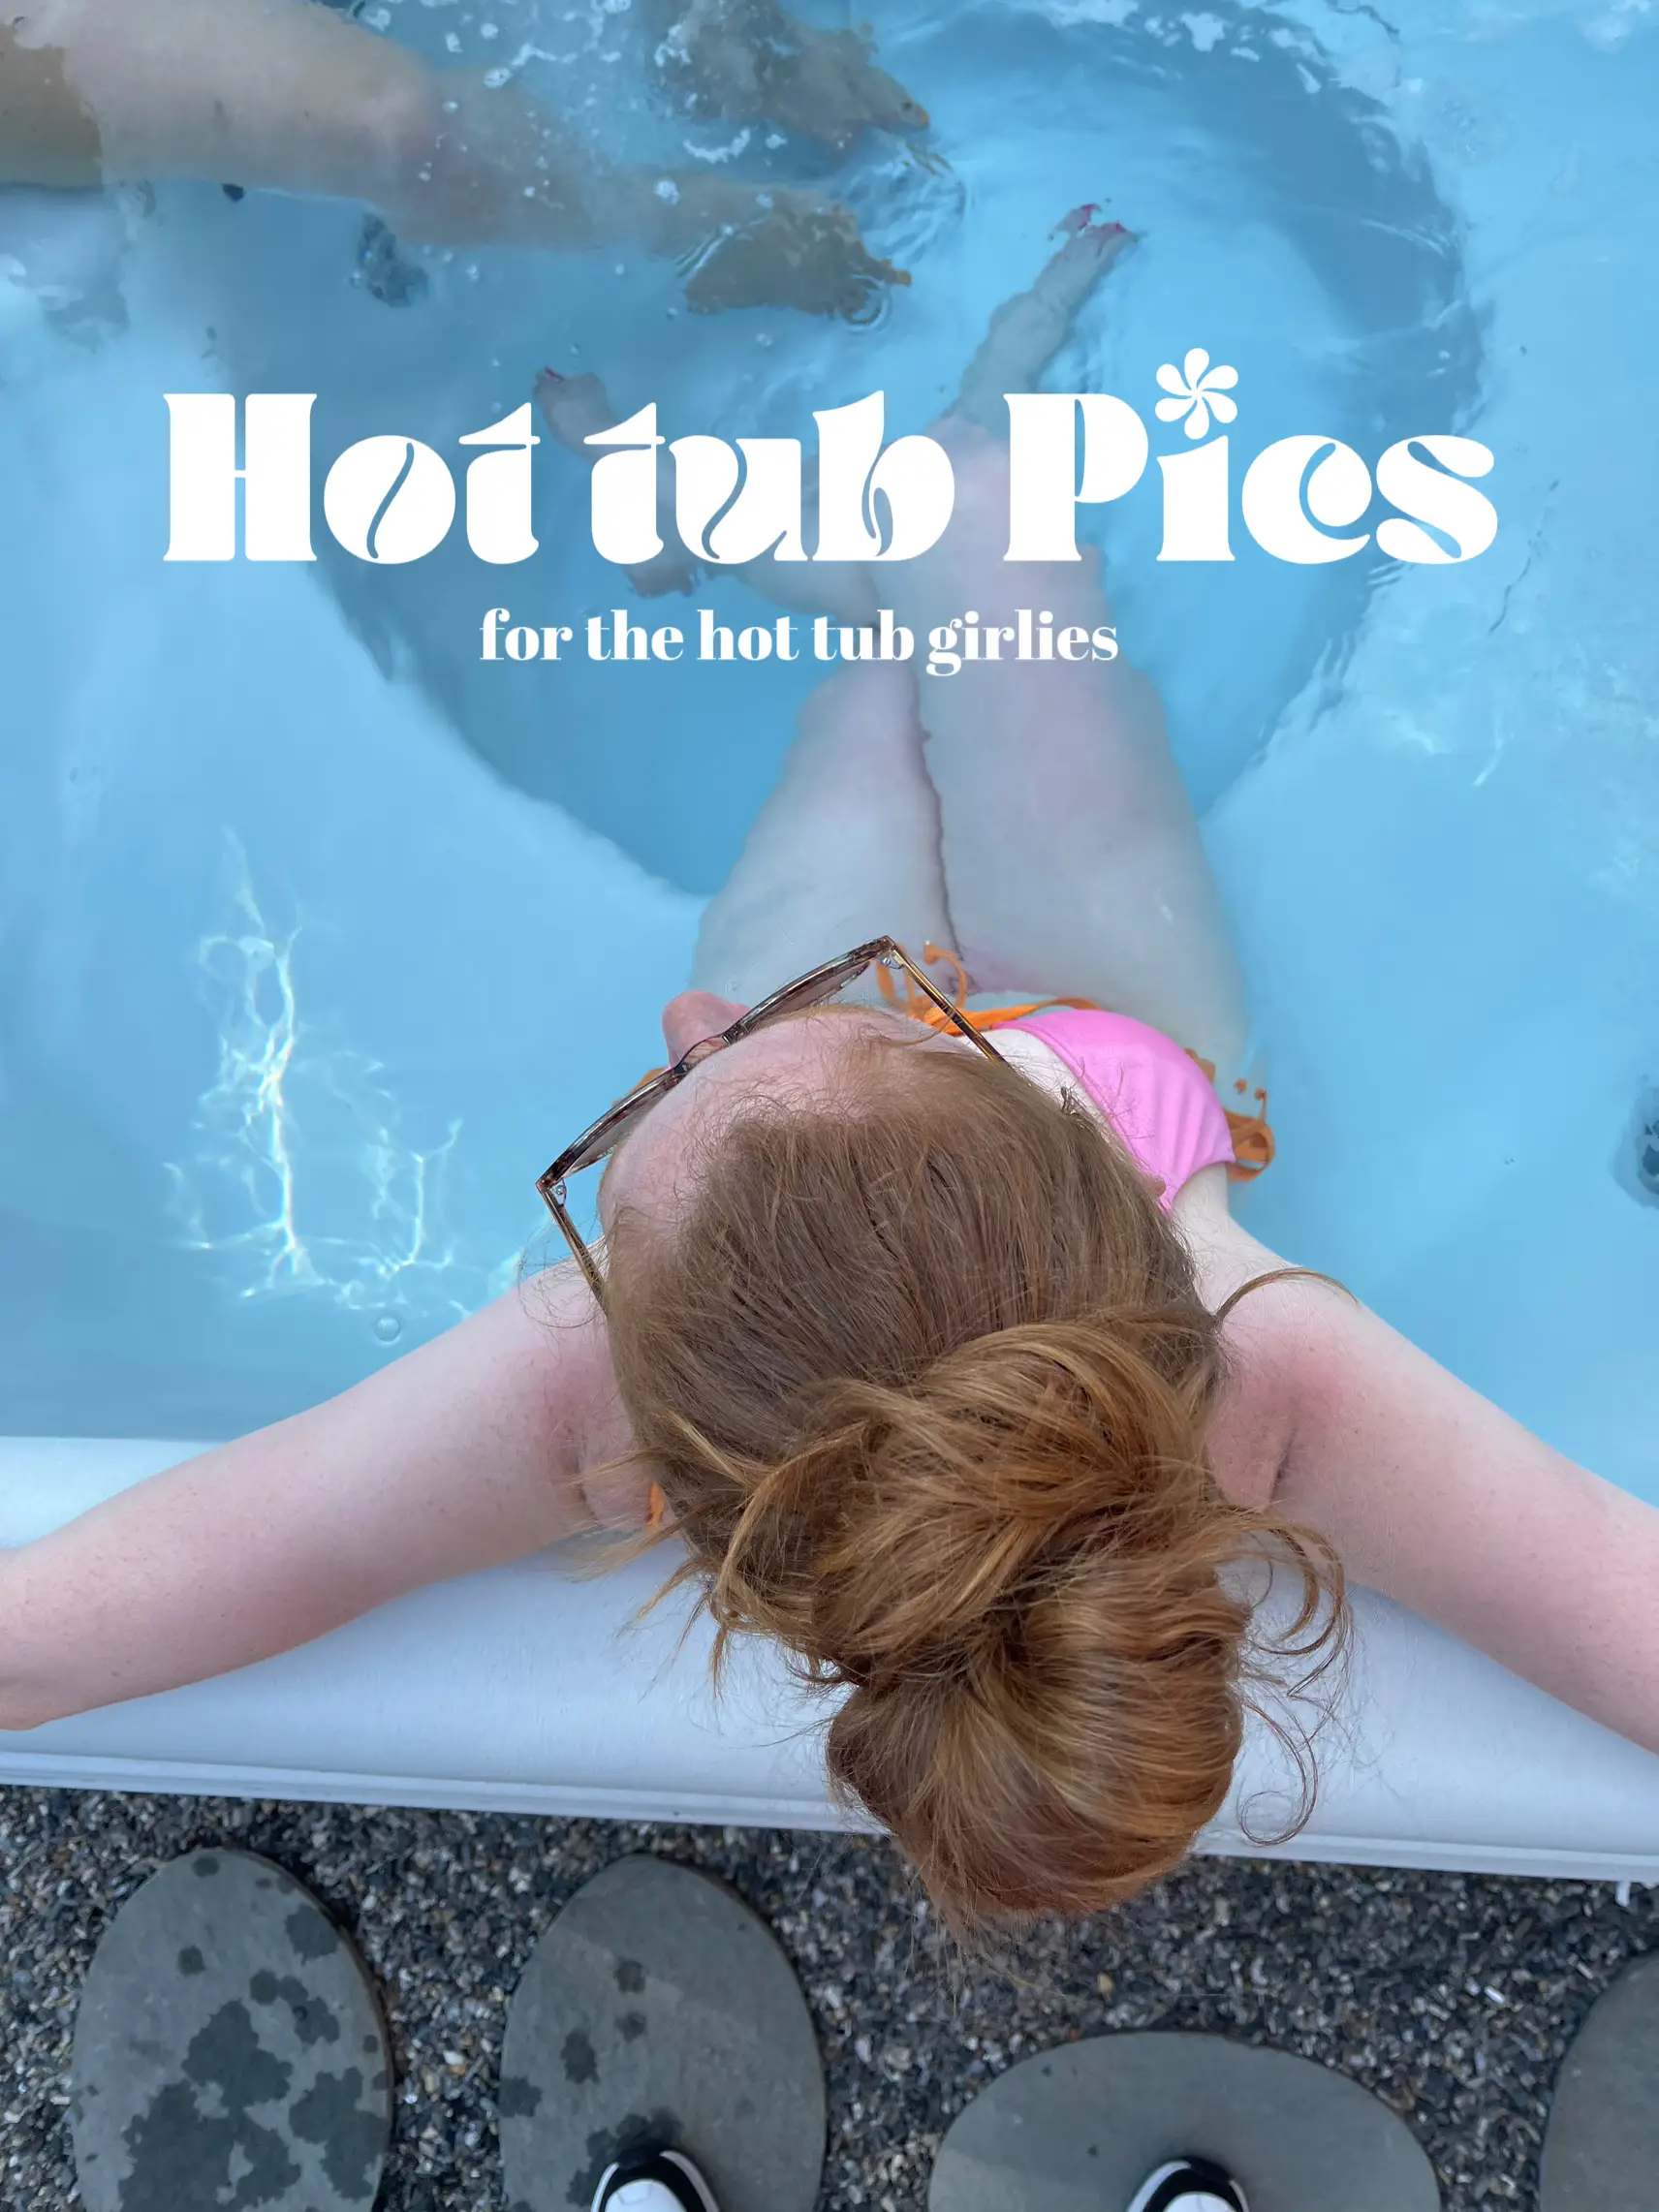 Hot tub Pics's images